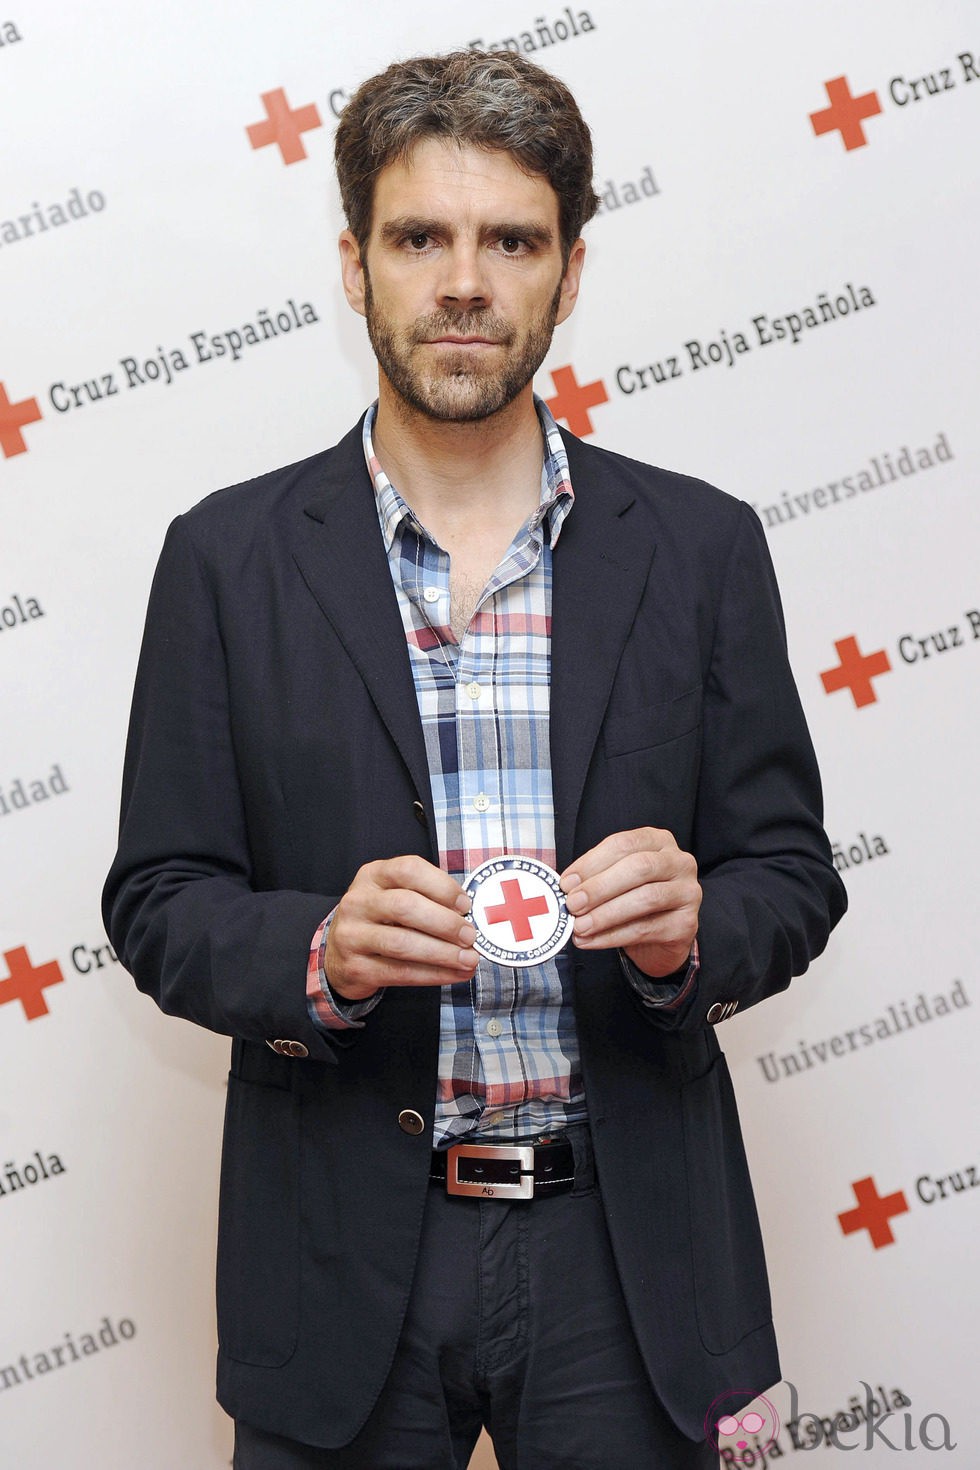 José Tomás dona los 50.000 euros del Premio Paquiro 2013 a Cruz Roja